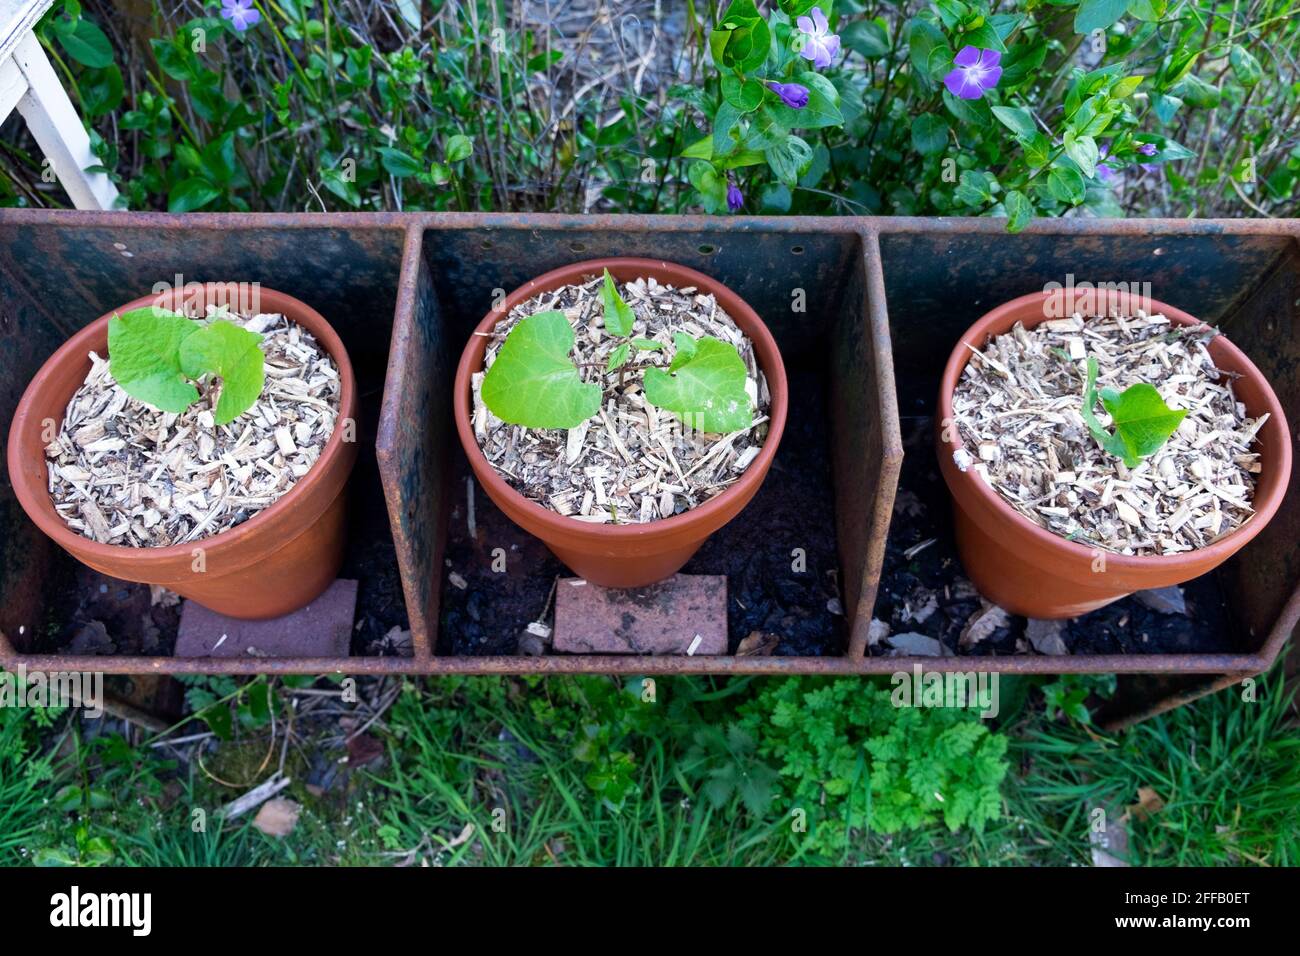 Hestia Zwergläufer Bohnenpflanzen Pflanzen in Terrakotta-Topf gepflanzt Töpfe mit abgebrochener Rinde Mulchen, um Feuchtigkeitsverlust zu verhindern Wasser im trockenen Frühling Wales Großbritannien Stockfoto